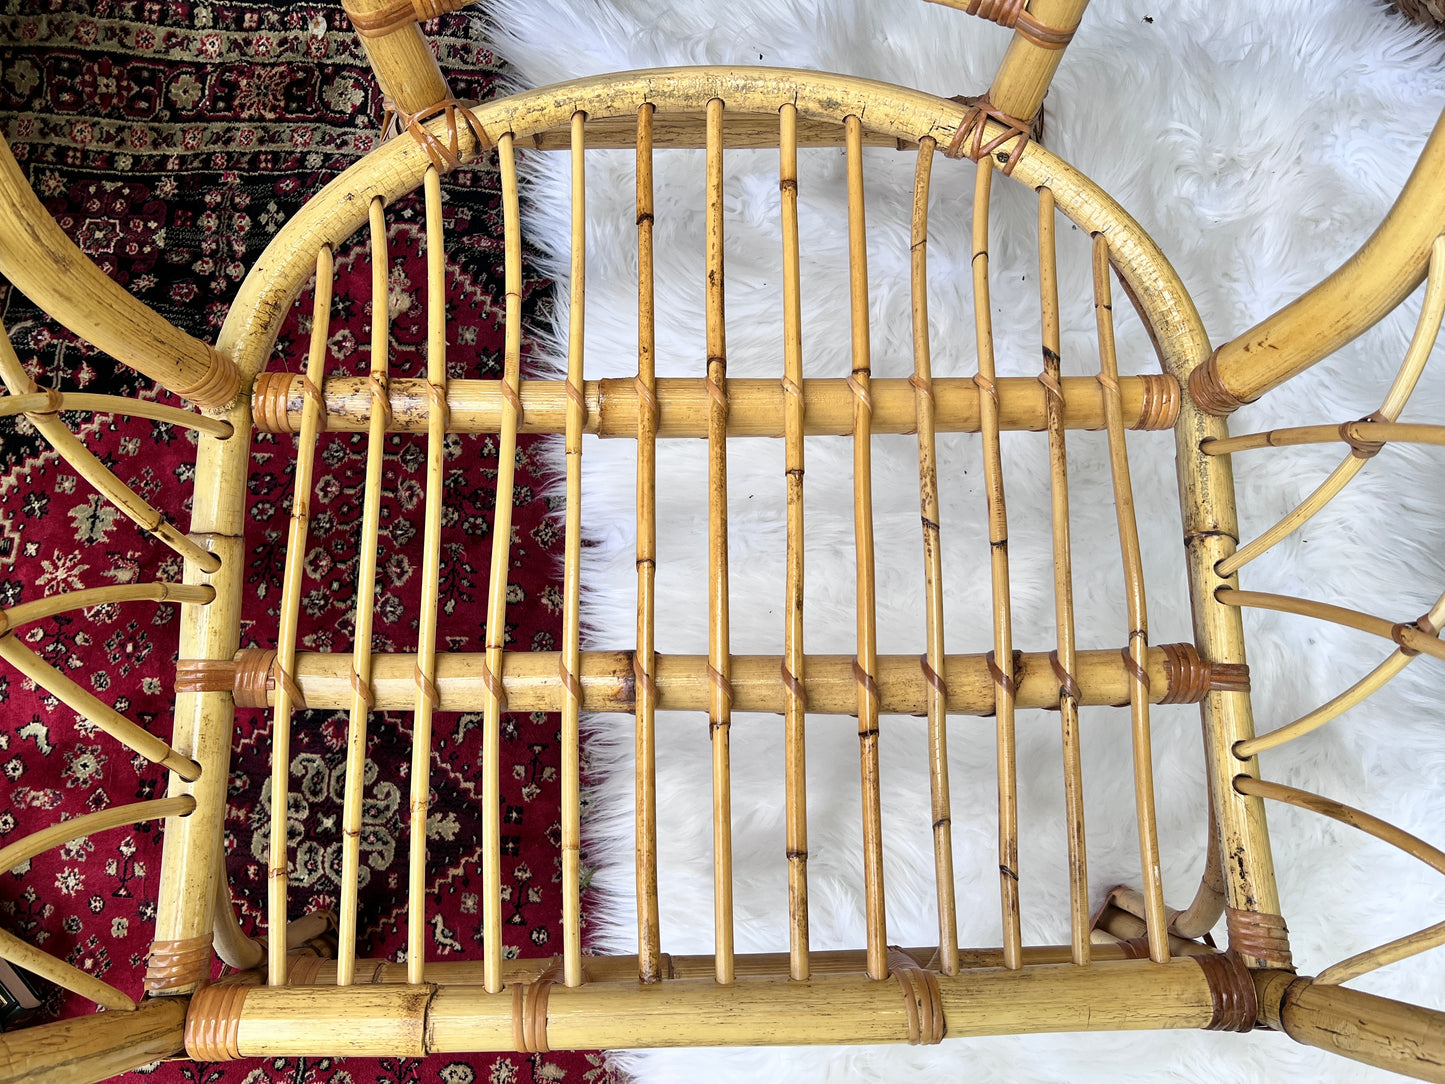 The Chai Spice Chair